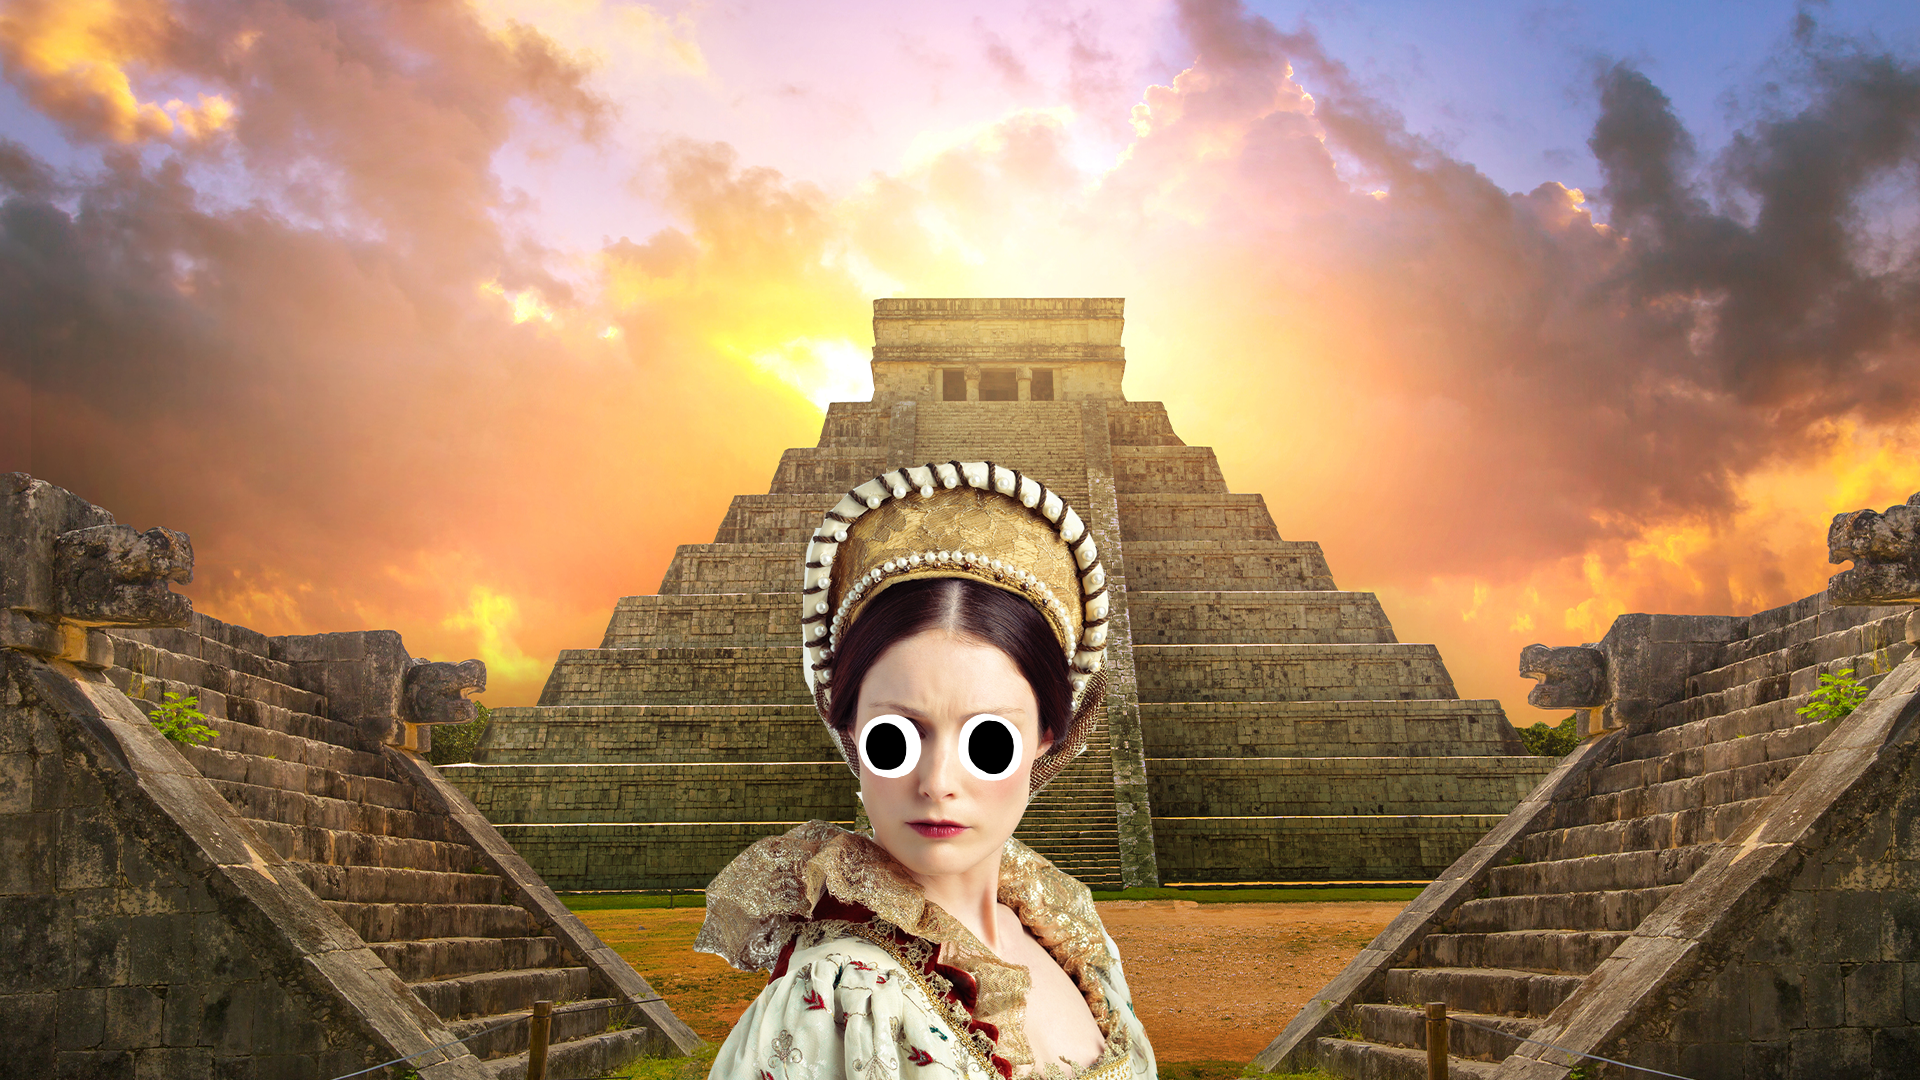 Tudor woman and Aztec temples